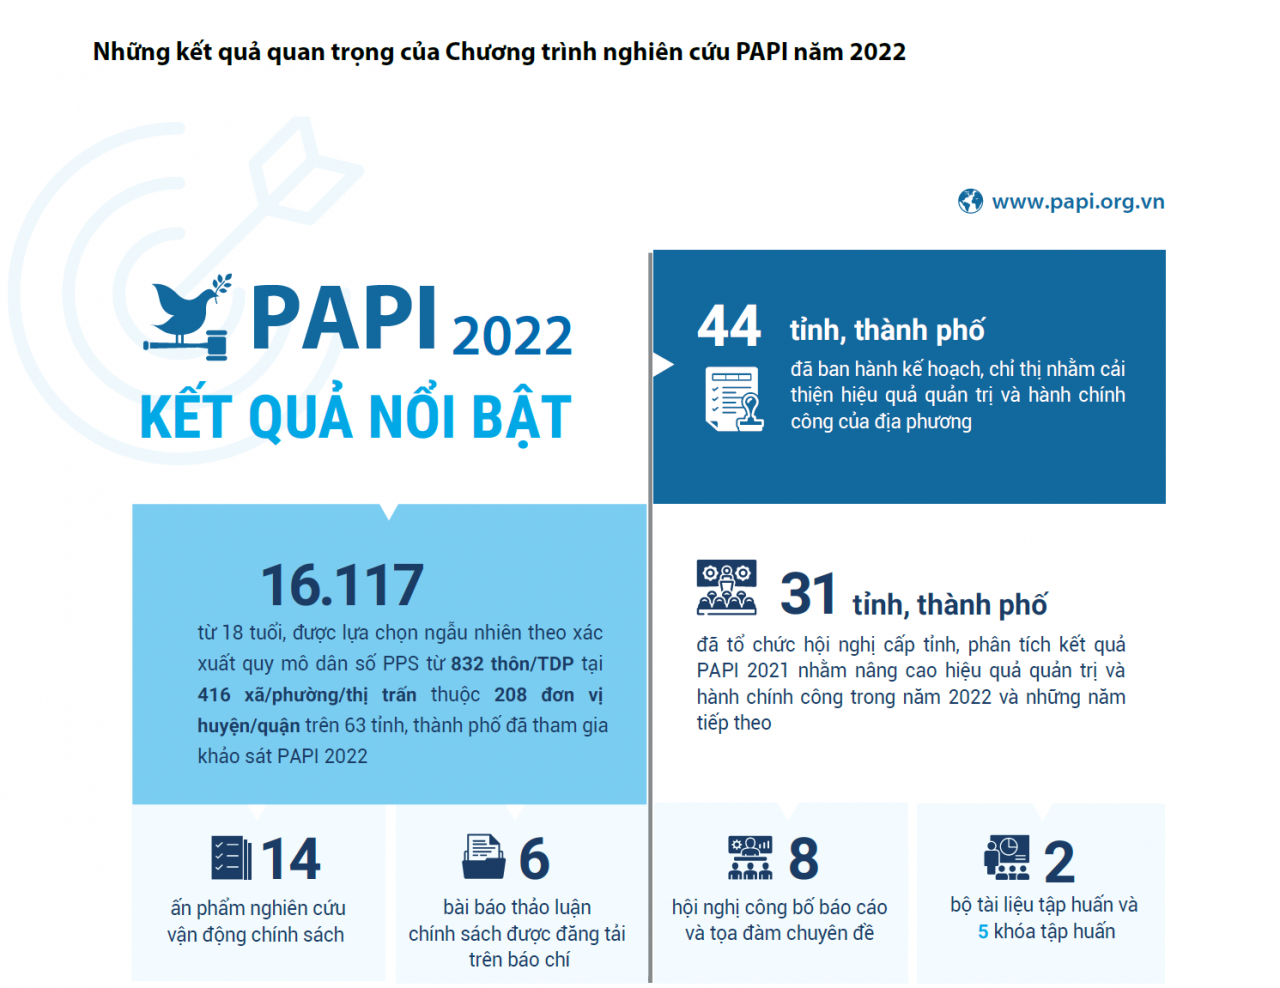 Sau PCI, Quảng Ninh lại tiếp tục giành quán quân tại PAPI 2022